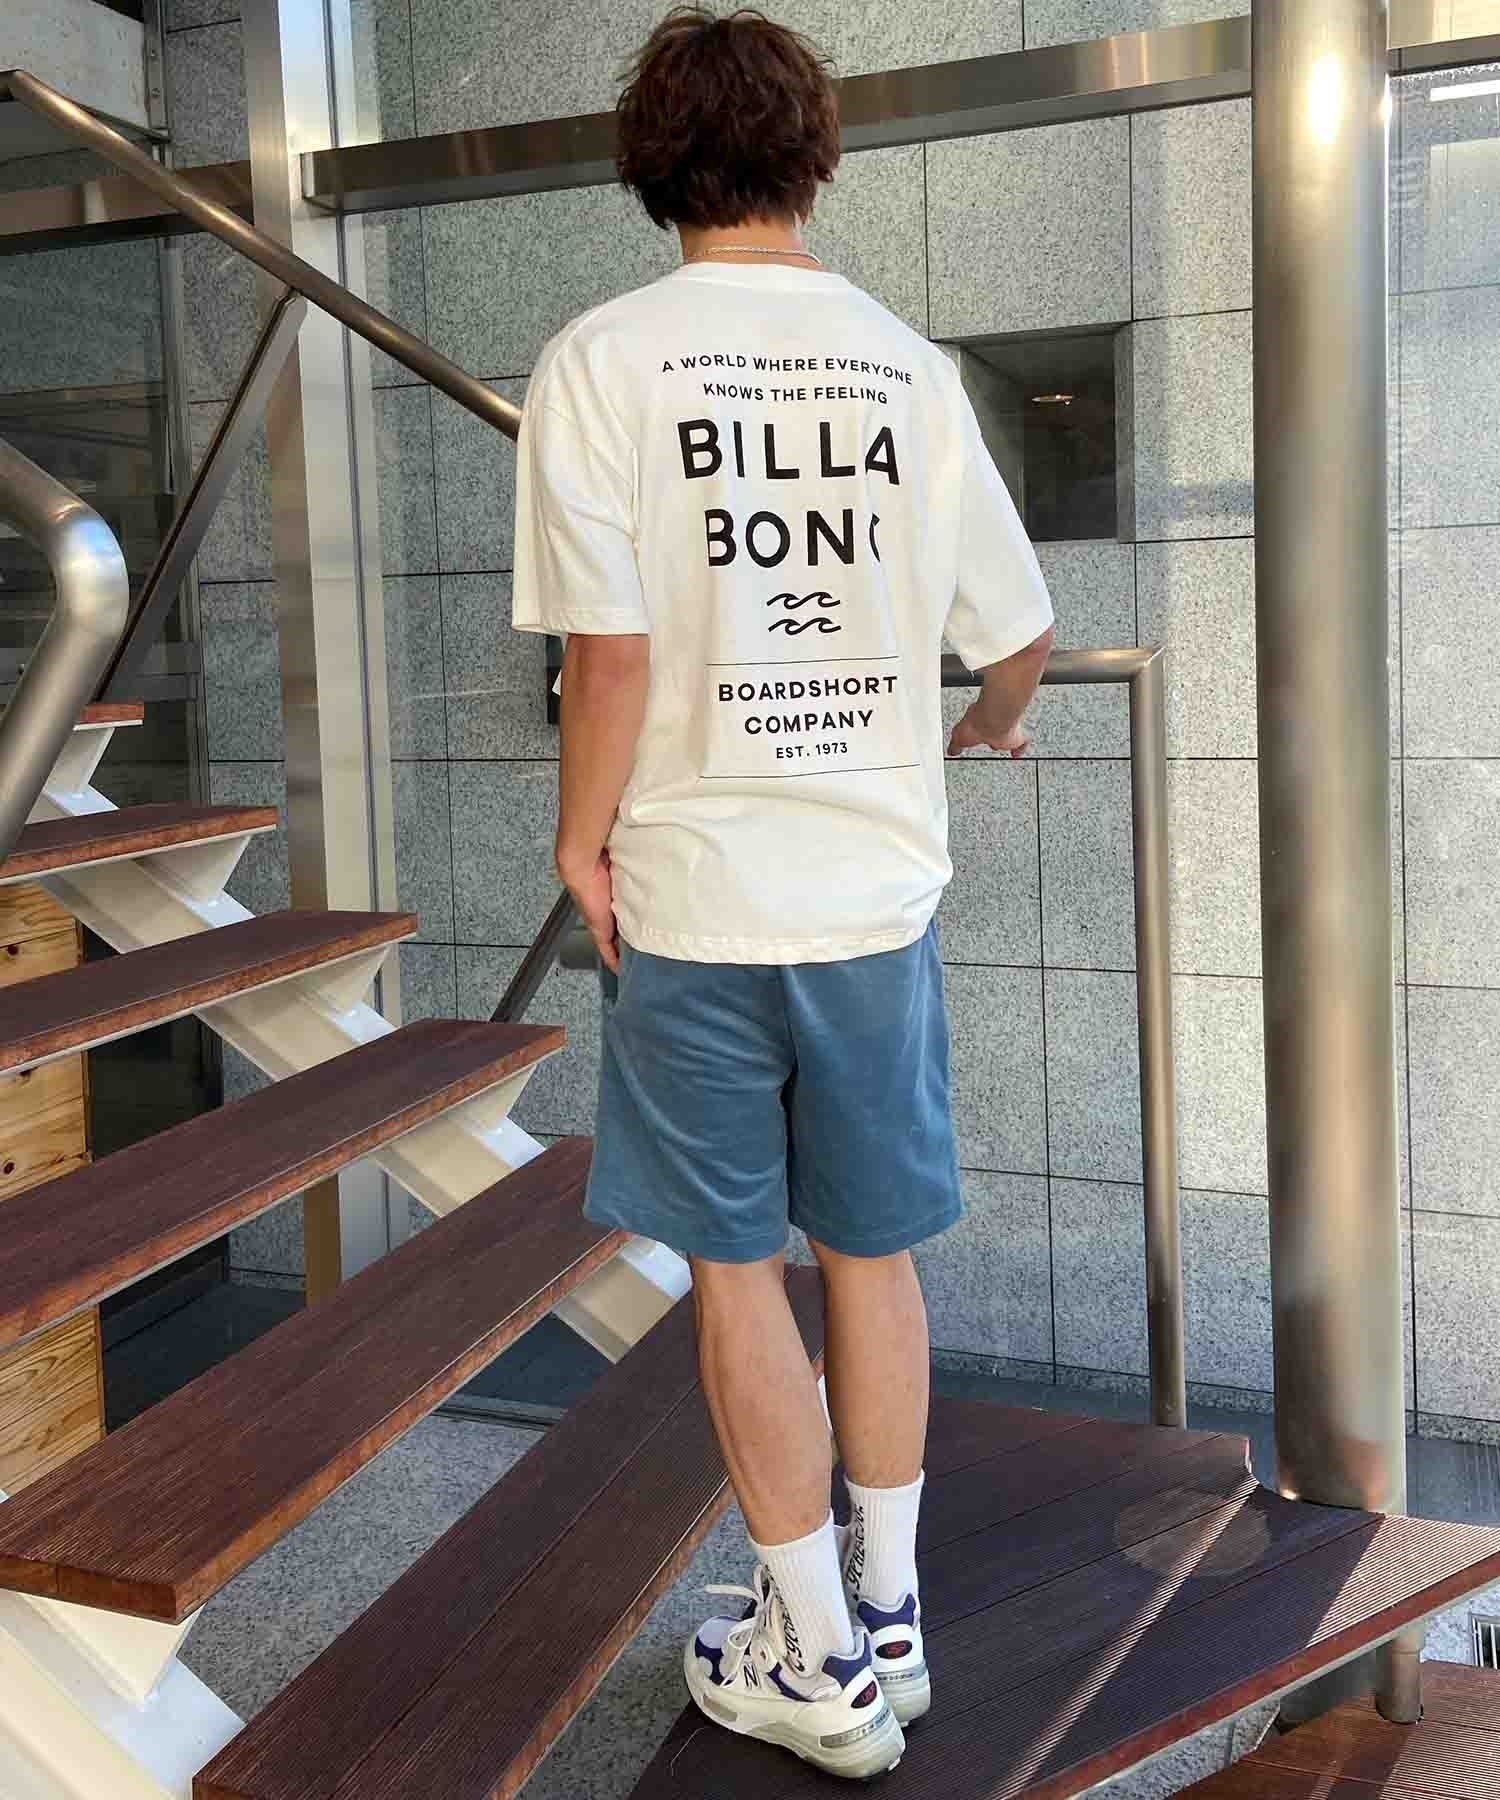 【マトメガイ対象】BILLABONG ビラボン DECAF Tシャツ 半袖 メンズ バックプリント BE011-213(BLK-S)